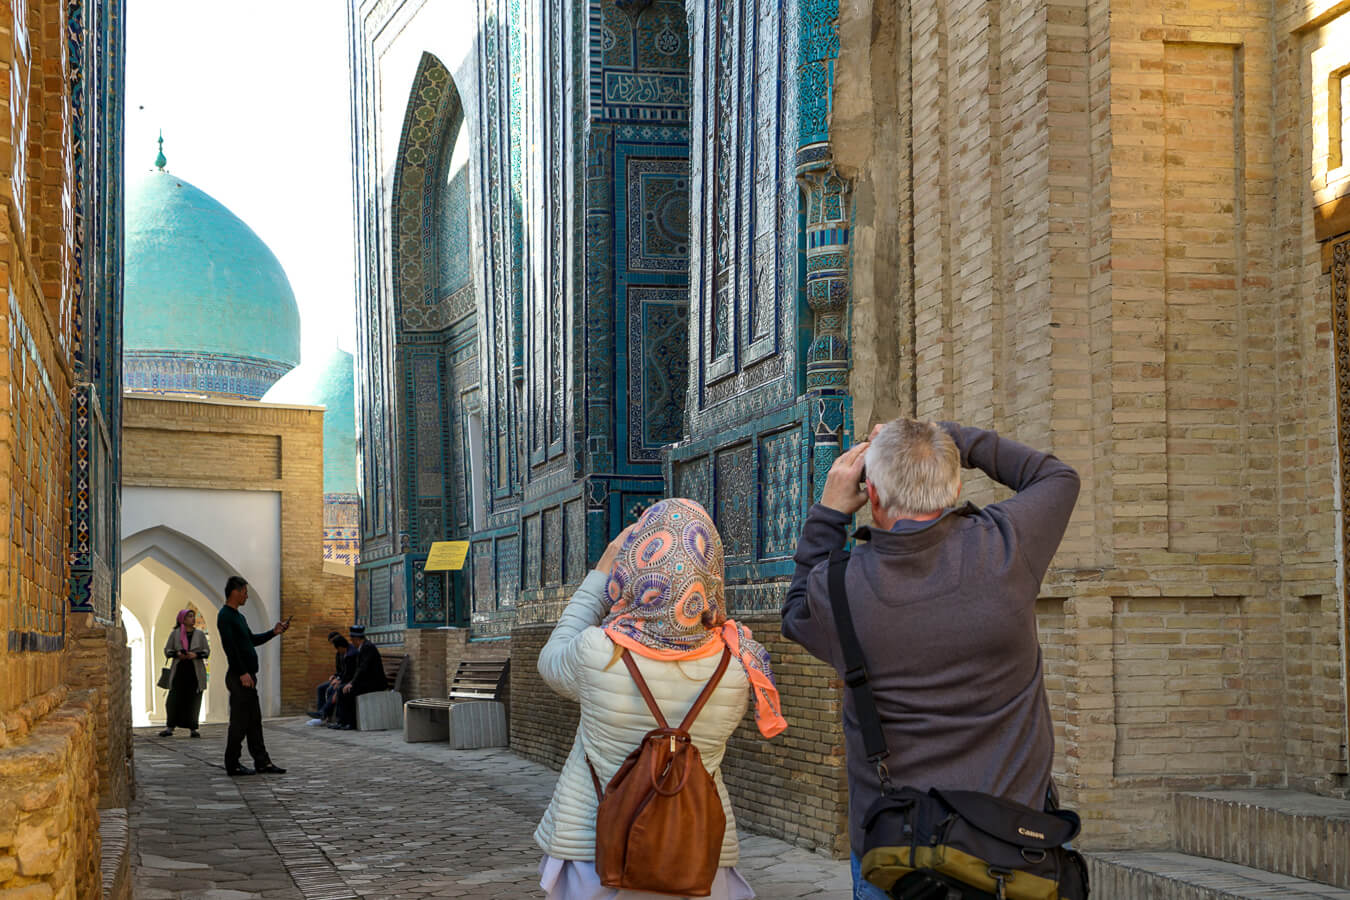 Shahizinda mausoleum photographed by tourists in Samarkand